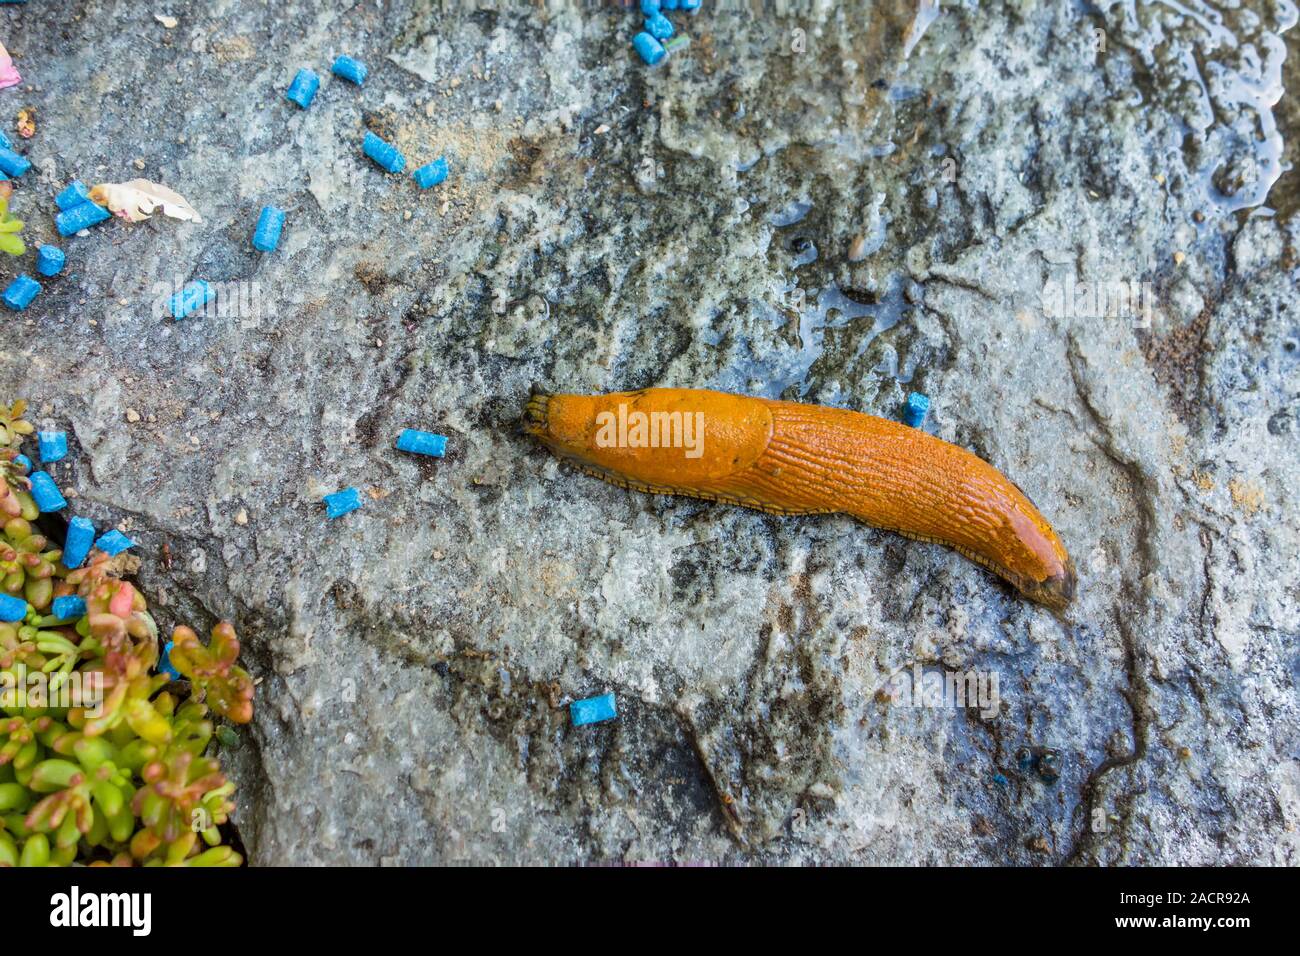 Slug with slug pellets Stock Photo